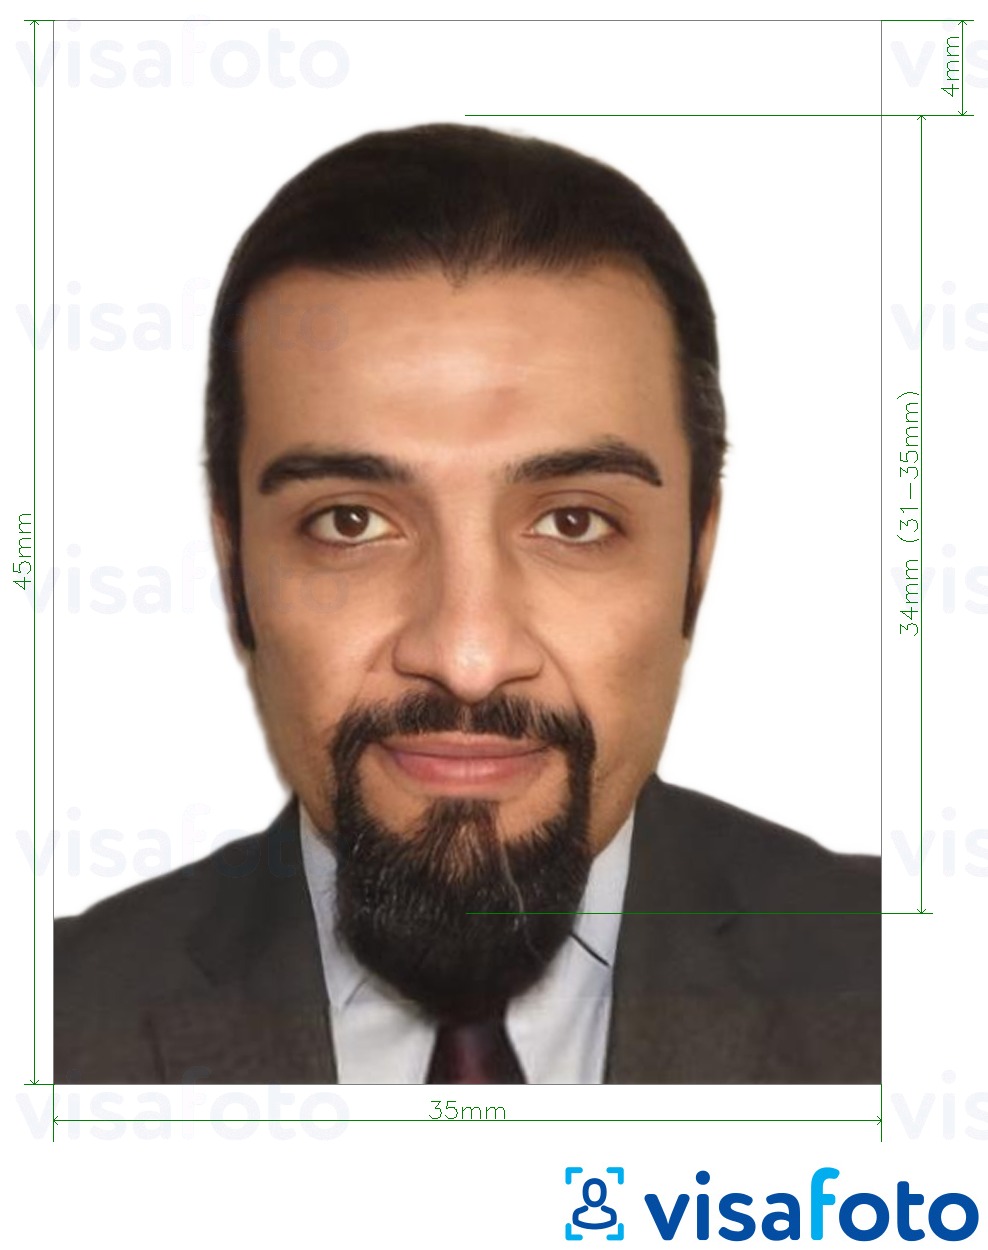 Primjer fotografije za Kuvajtska viza 35x45 mm s točno određenom veličinom